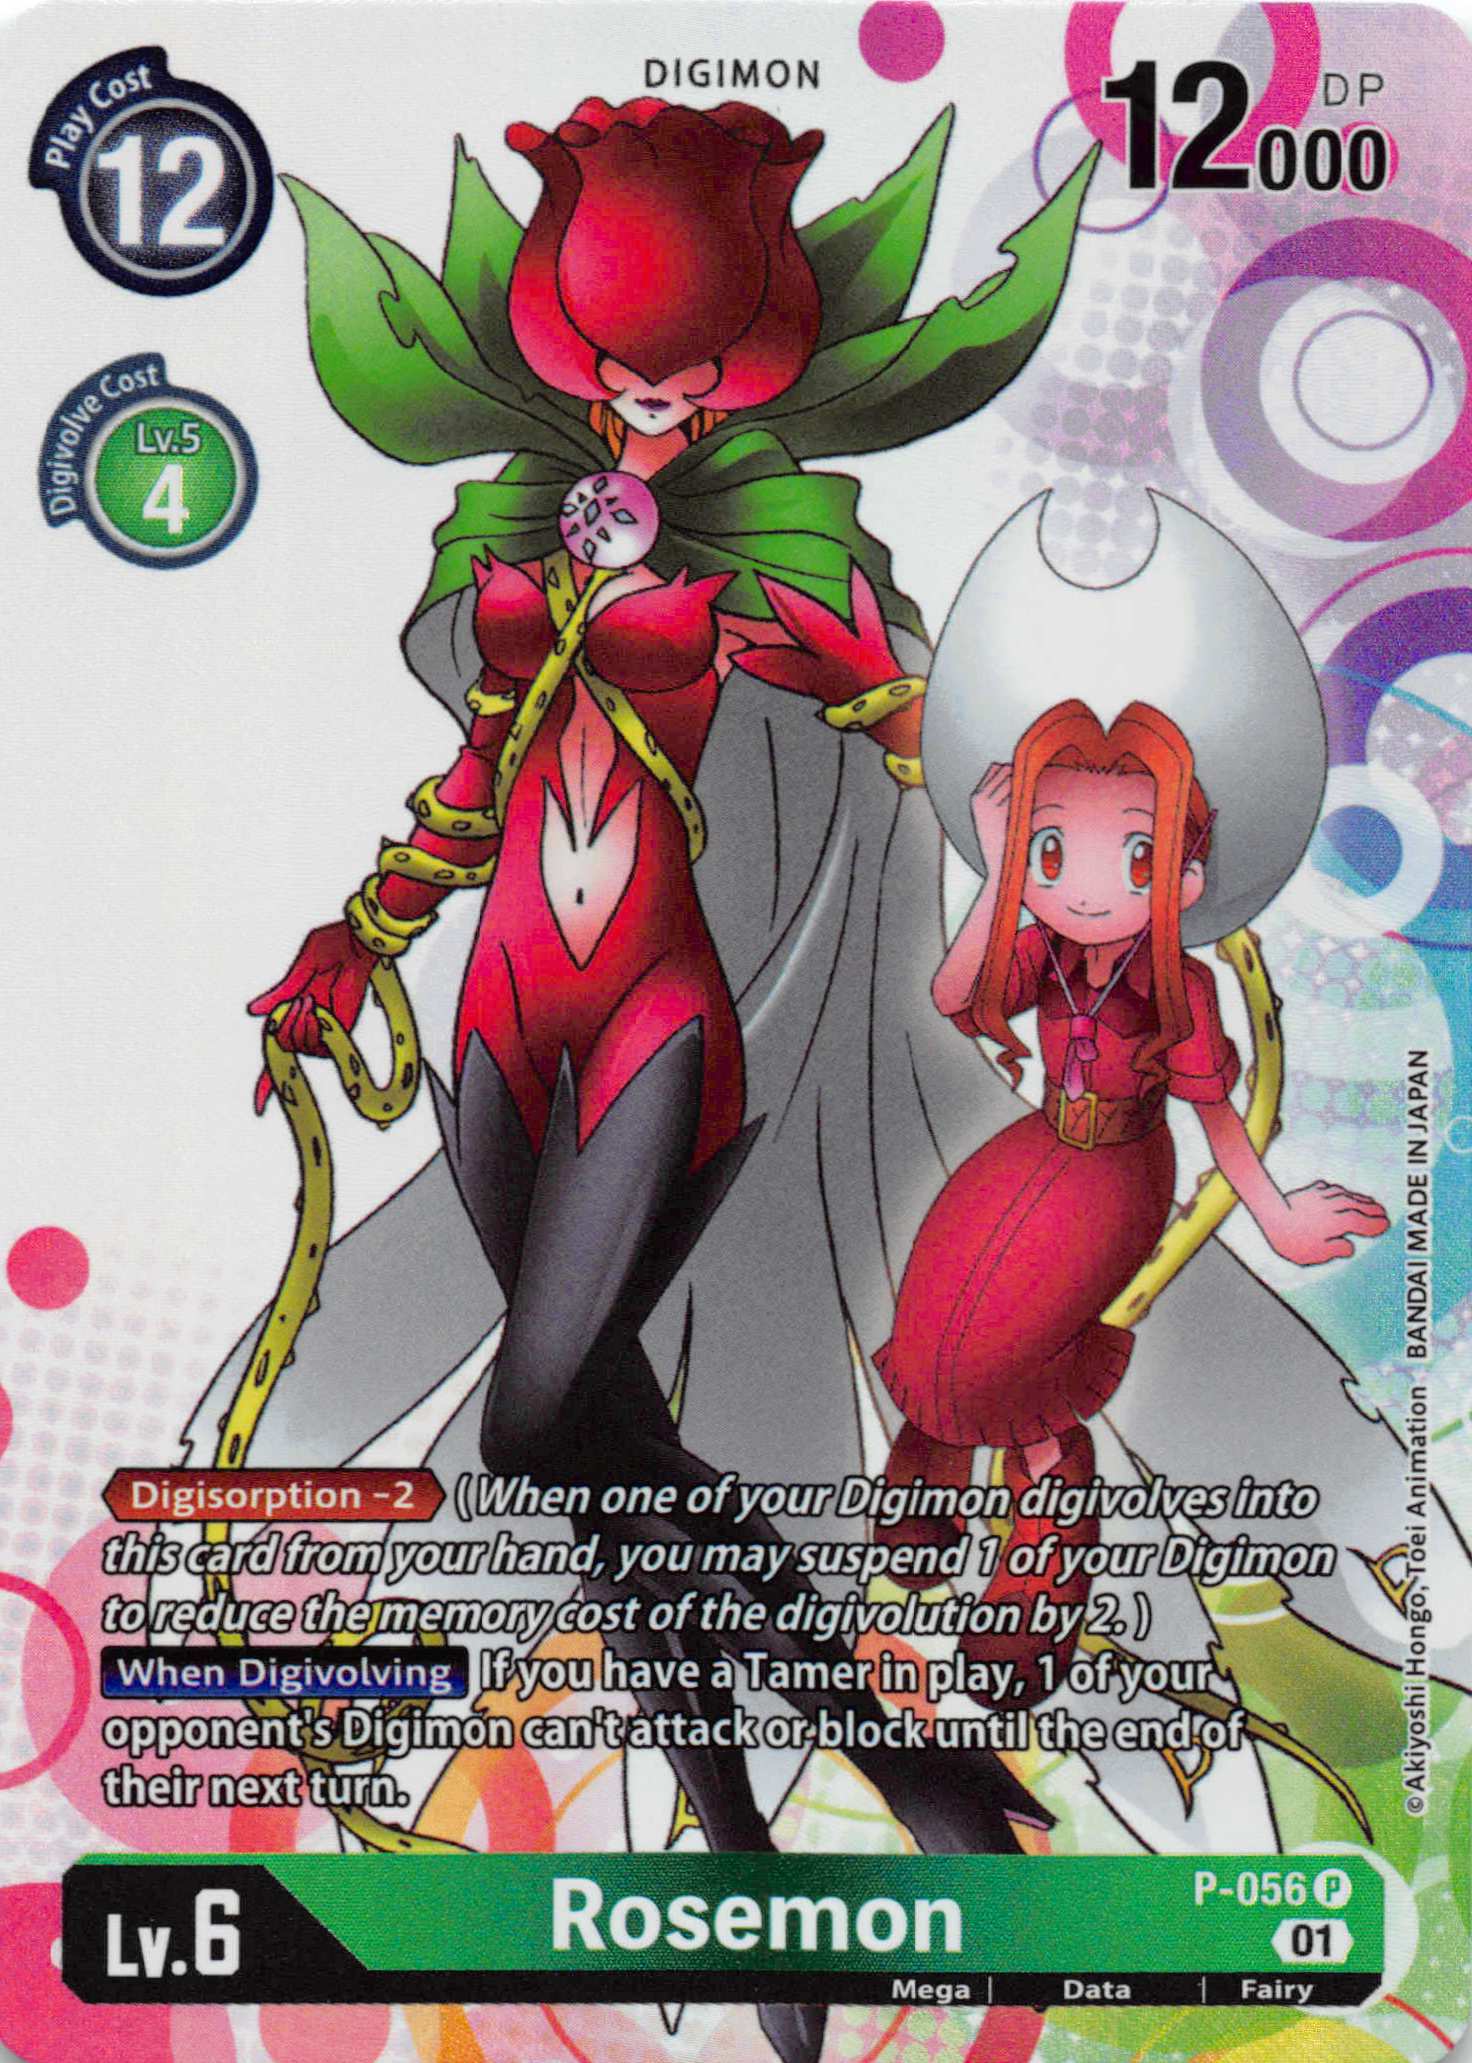 Rosemon [P-056] [Digimon Promotion Cards] Foil